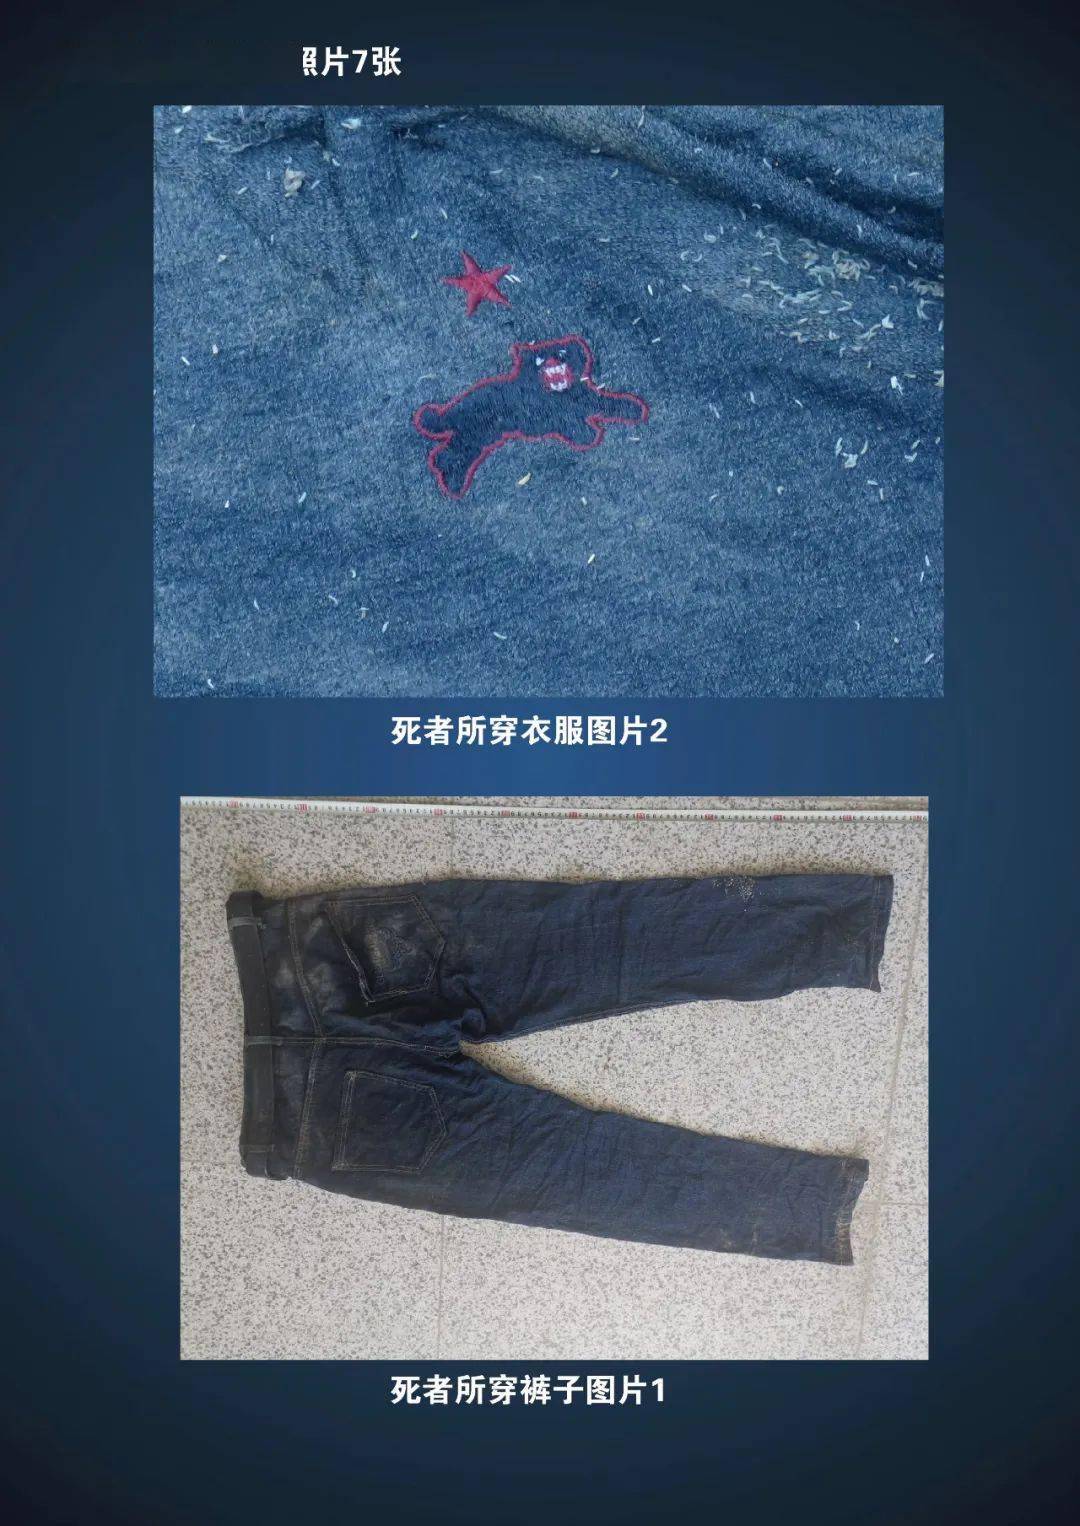 广南发现一具年轻男性尸体,警方急寻家属